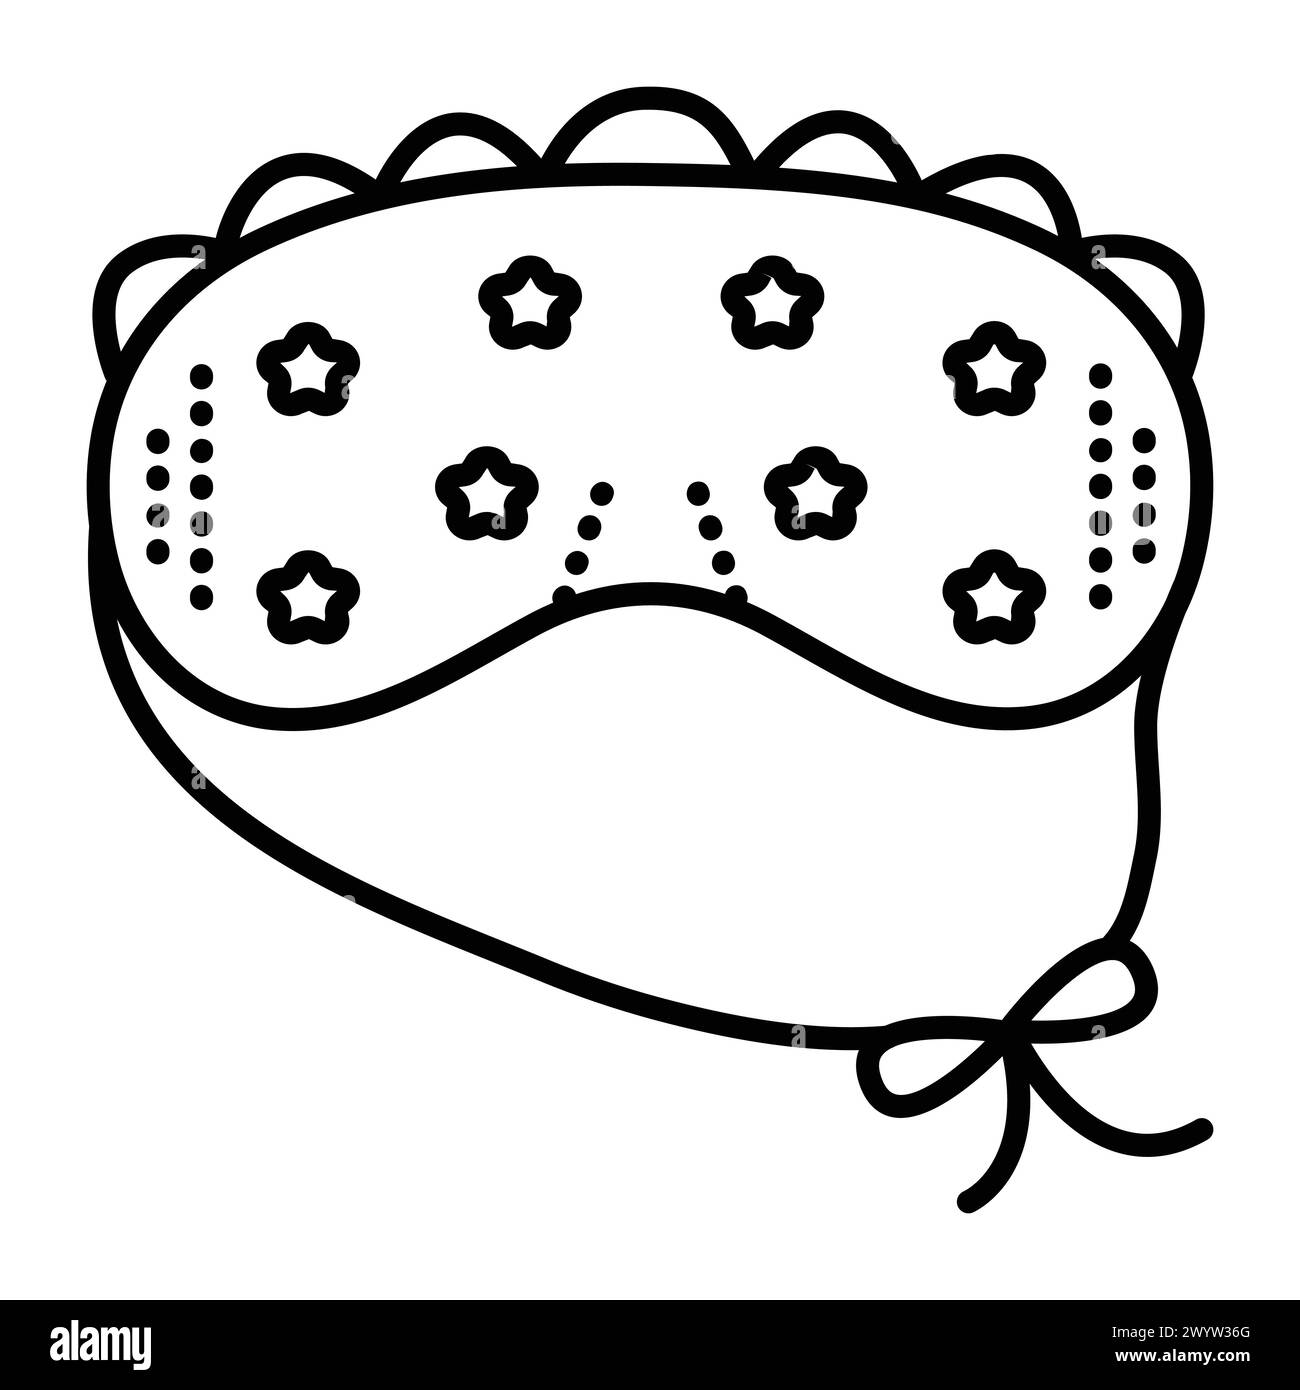 Nachtschlaf Augenmaske mit Krawatten. Vektorsymbol mit schwarzer Linie, monochromes Umrisszeichen mit Augenbinde Stock Vektor